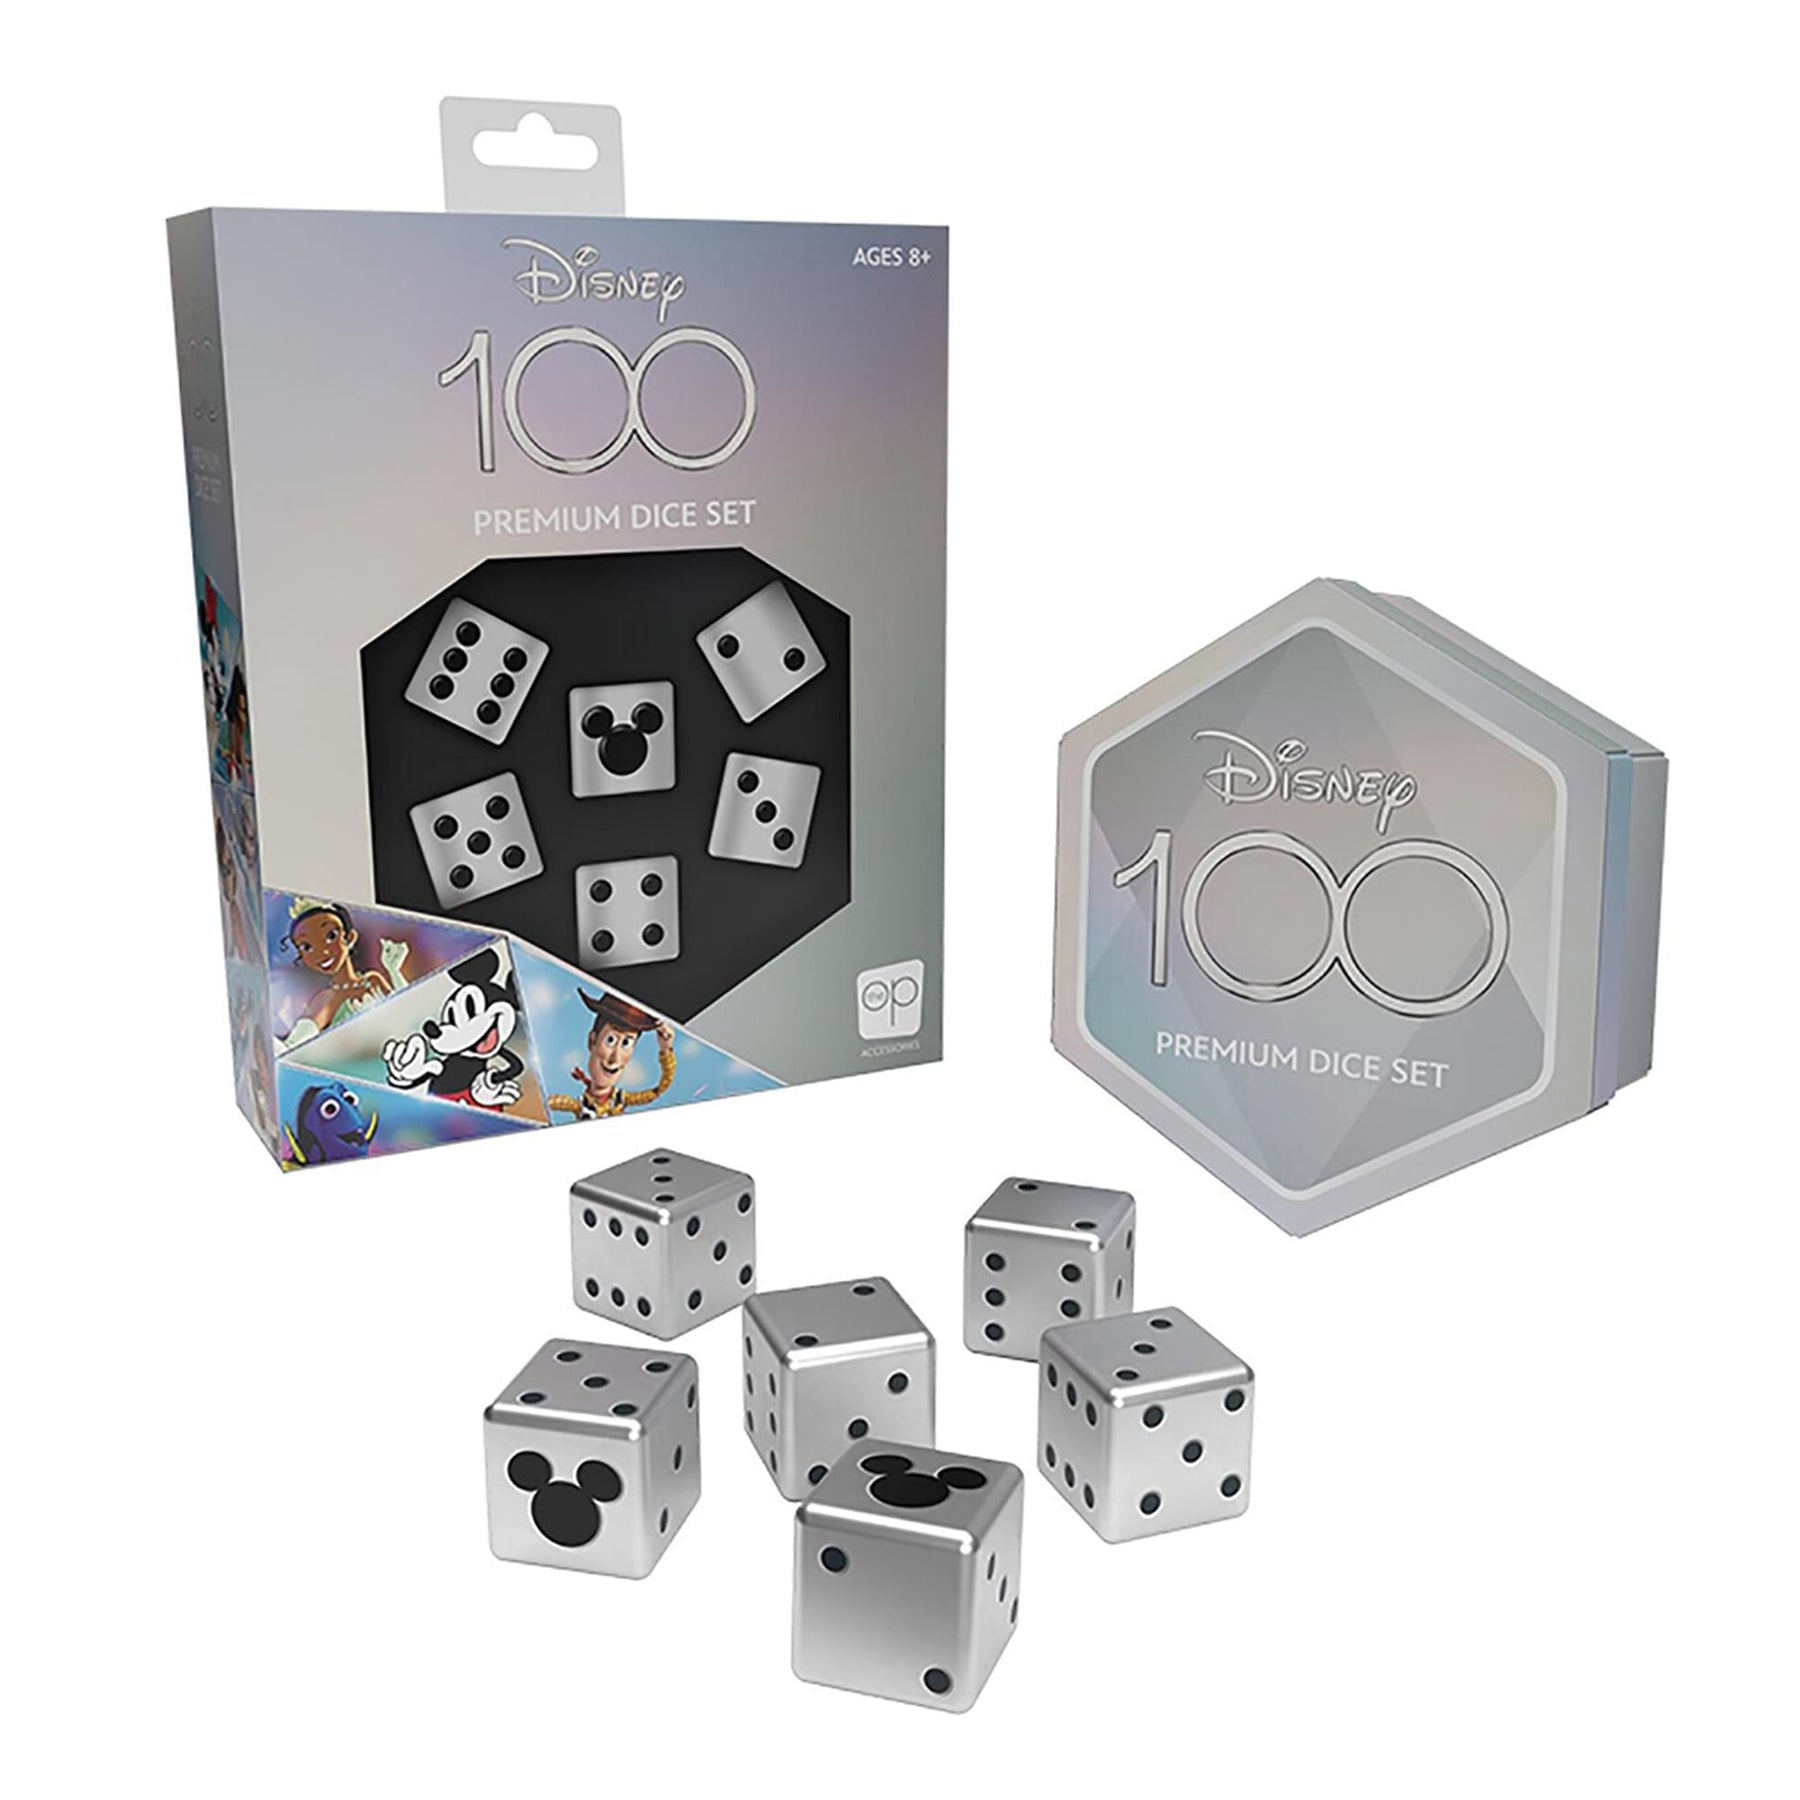 Disney 100 Premium Dice | Includes 6 Acrylic Dice